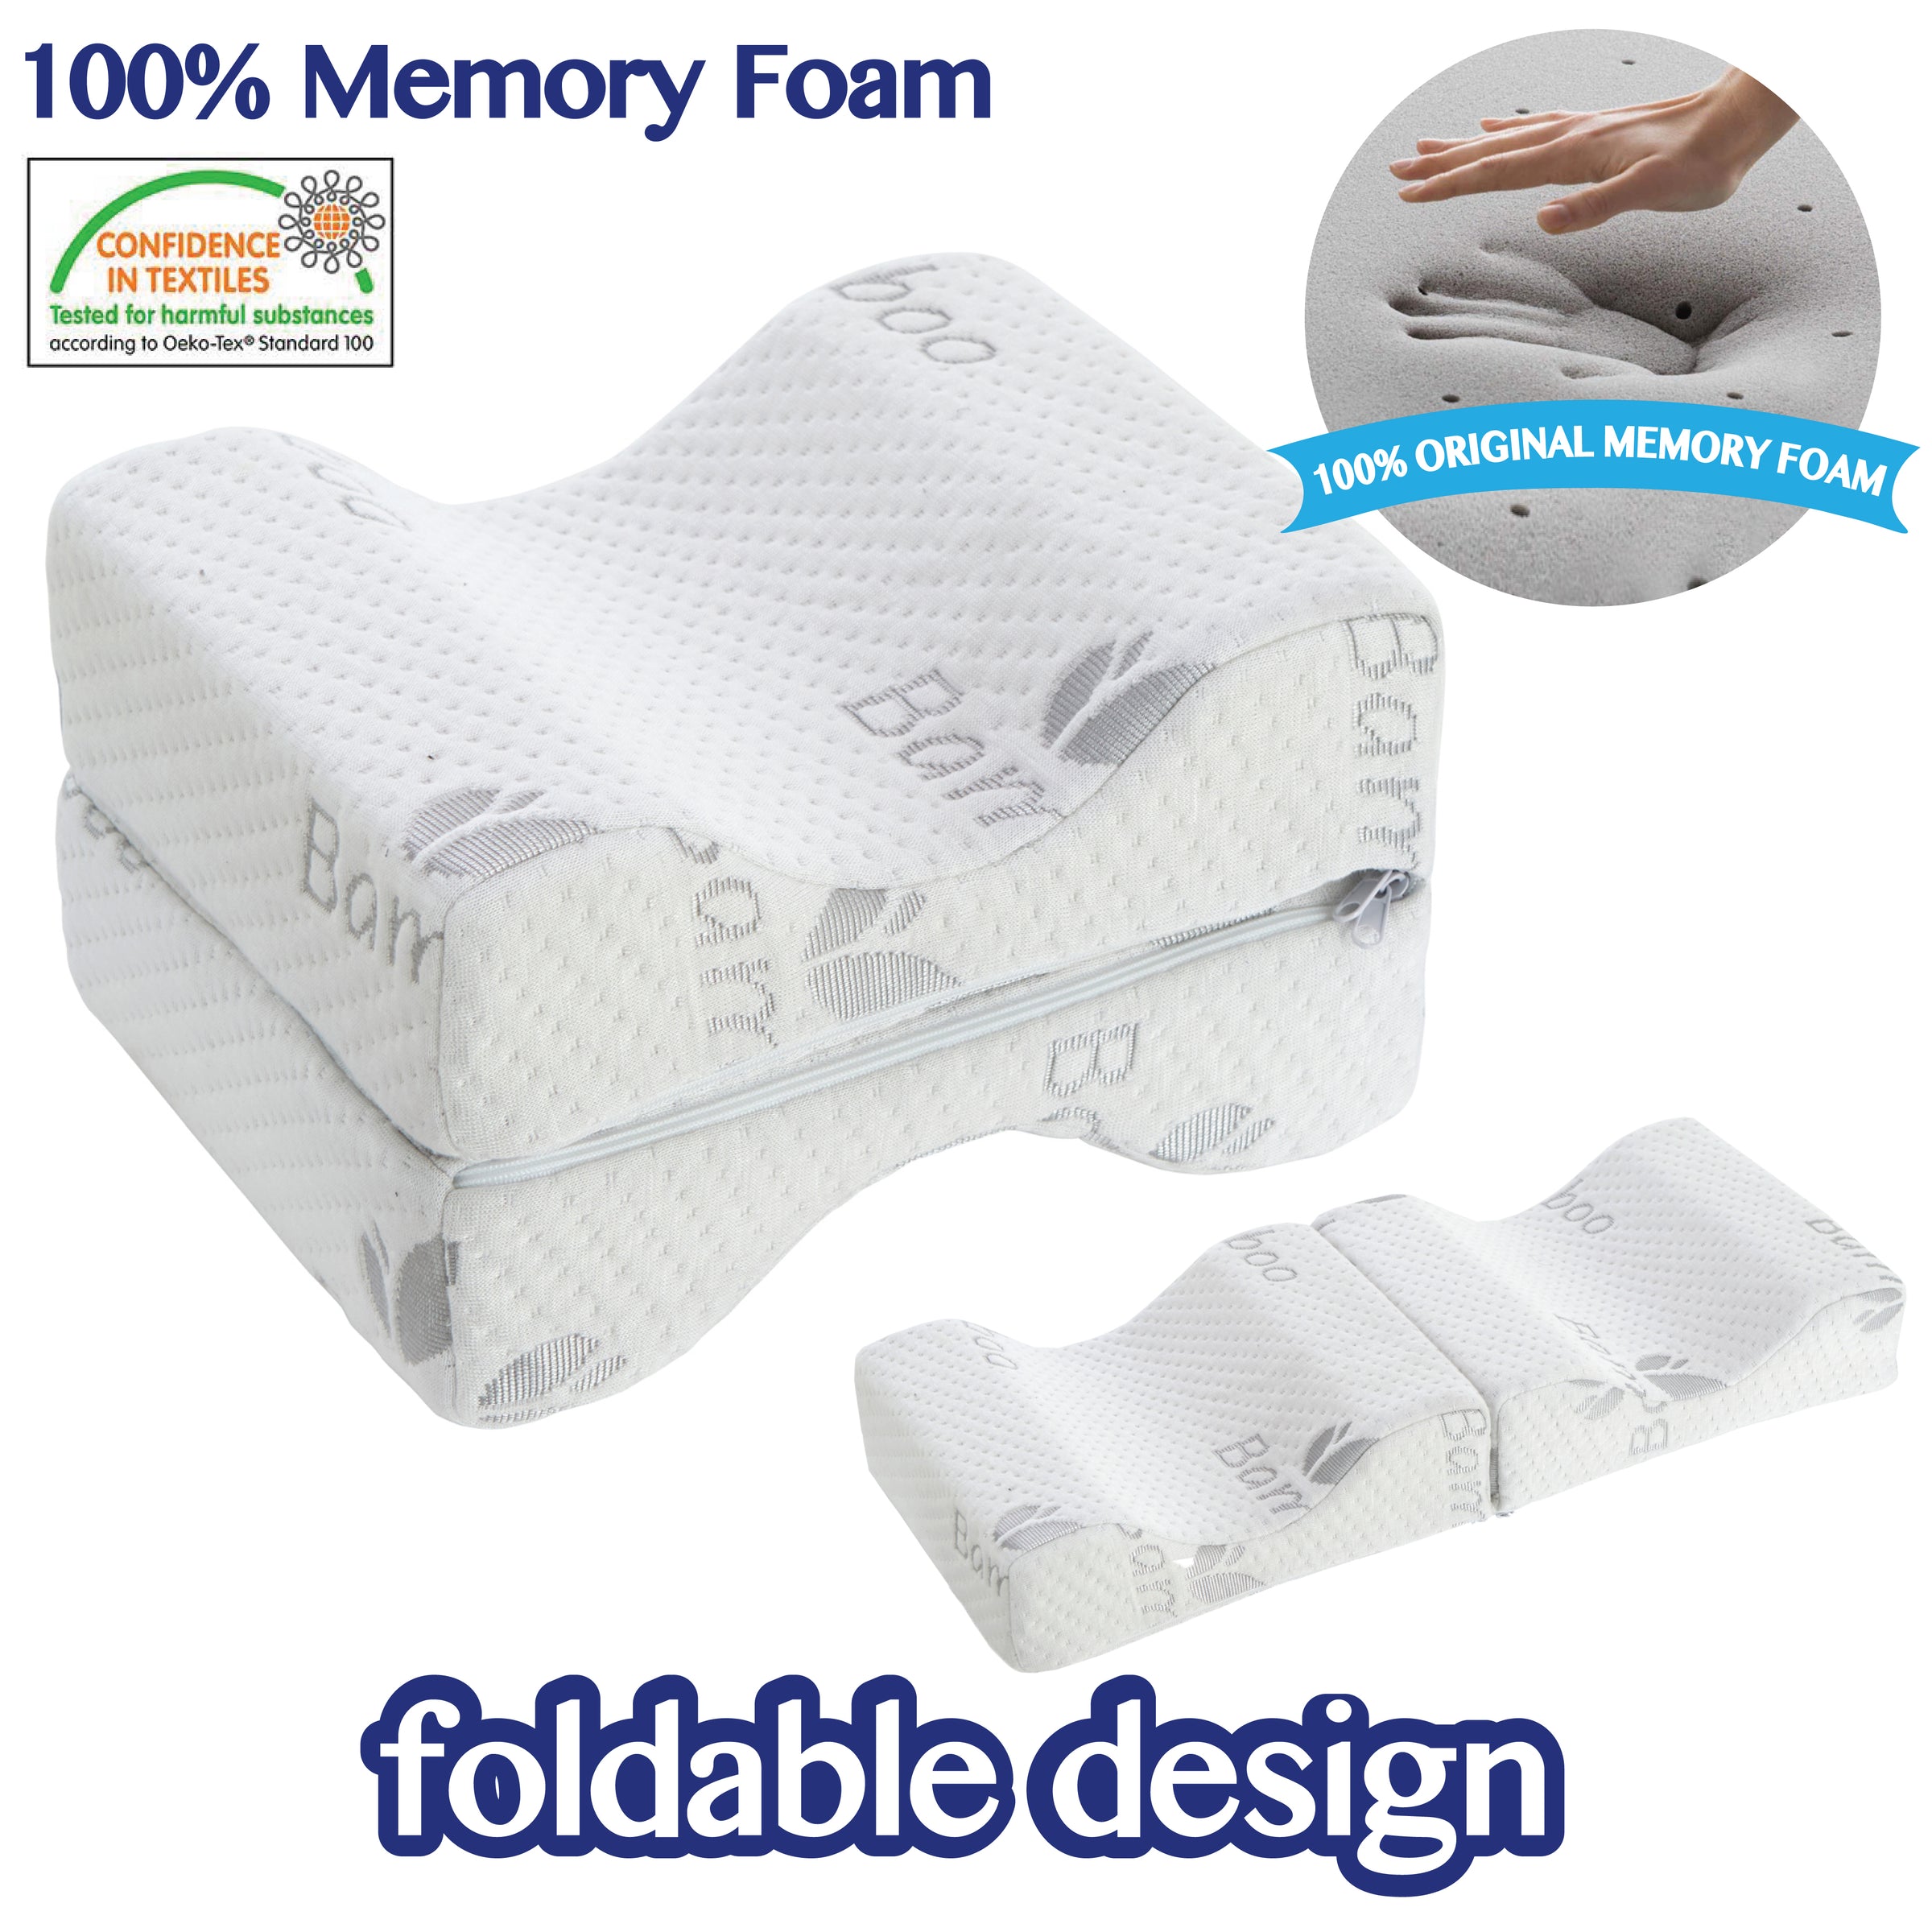 Comforever Memory Foam Orthopedic Leg Pillow, Knee Pillow for Sleeping Hip  Pain, Side, Back, Stomach Sleeper